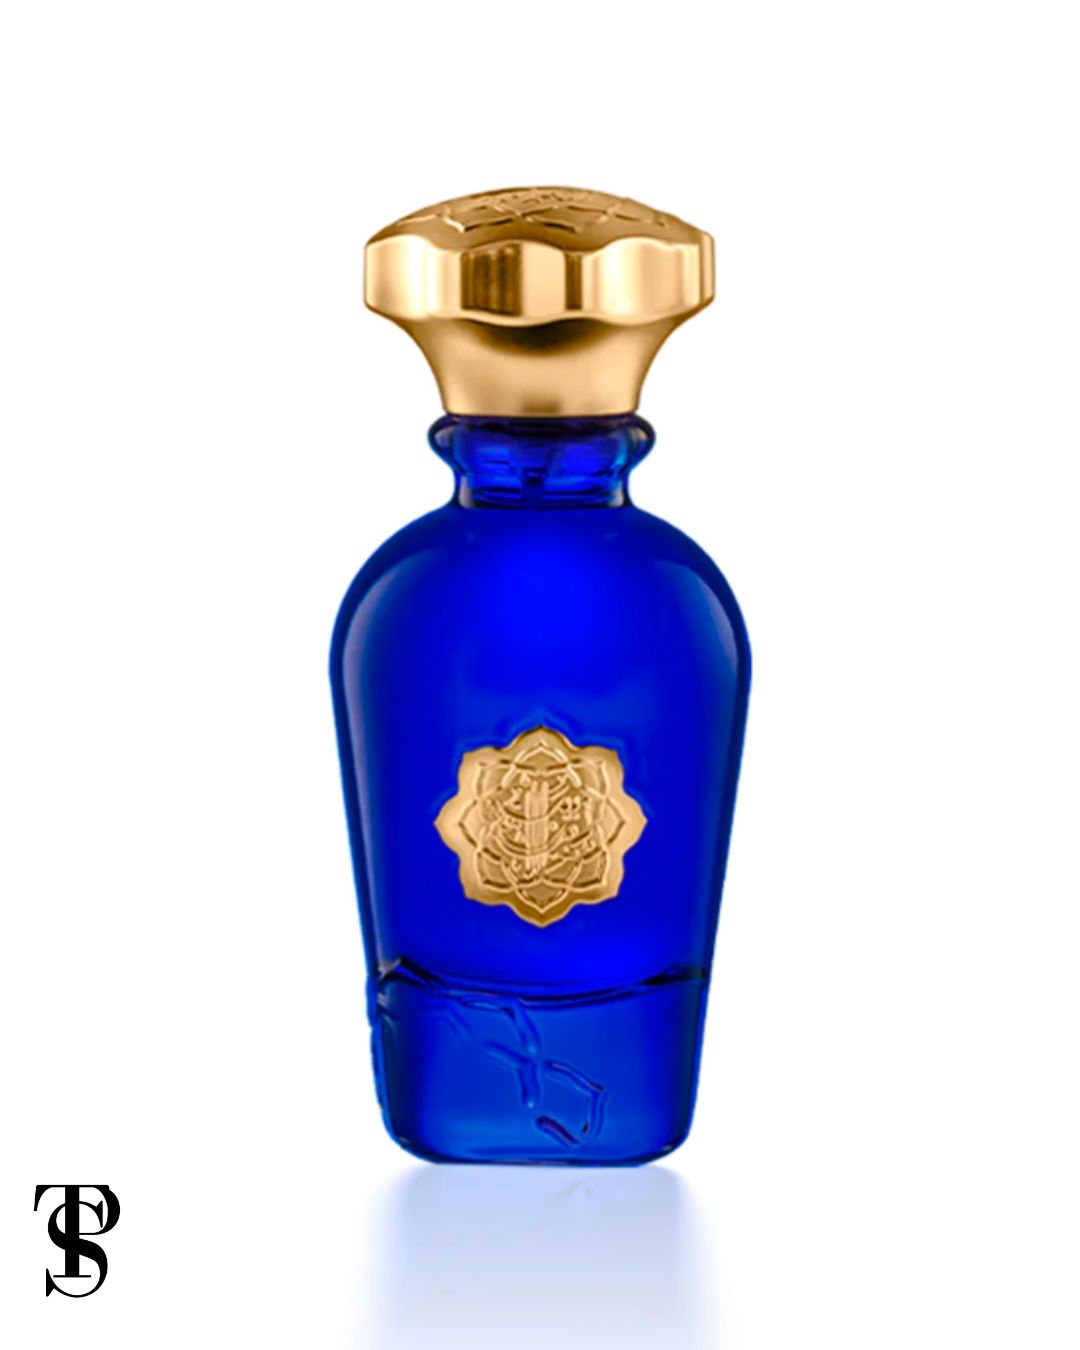 Albait Aldimashqi - Most Wanted Parfum (75ML)